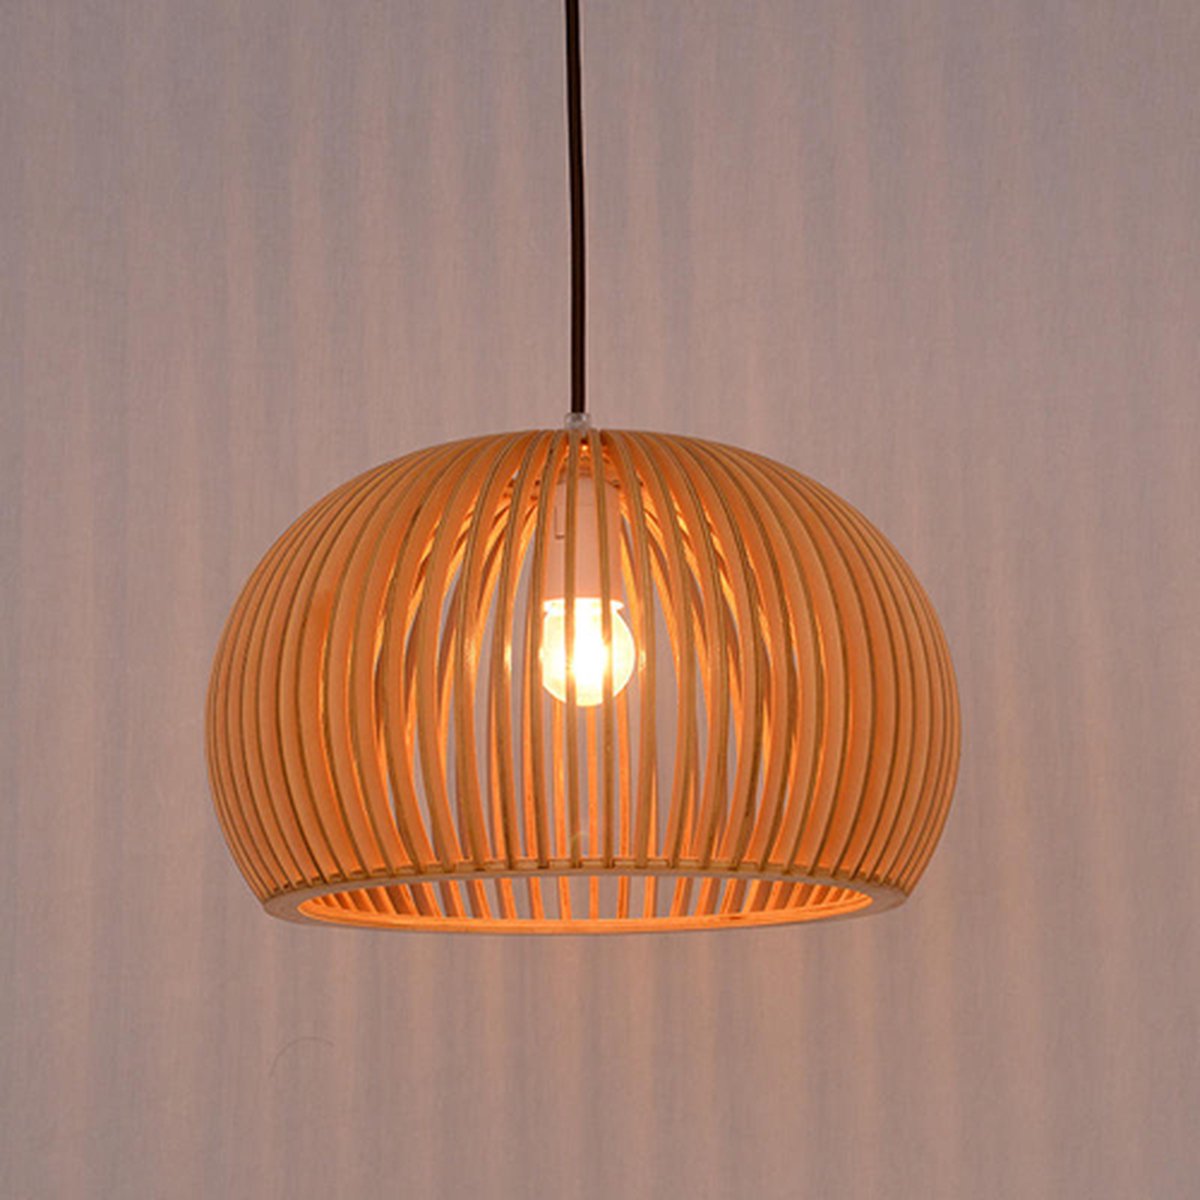 Hanglamp Rossano - Handgemaakt - Ø45cm - Bamboe - Rotan - Inclusief lichtbron - Natuurlijke uitstraling